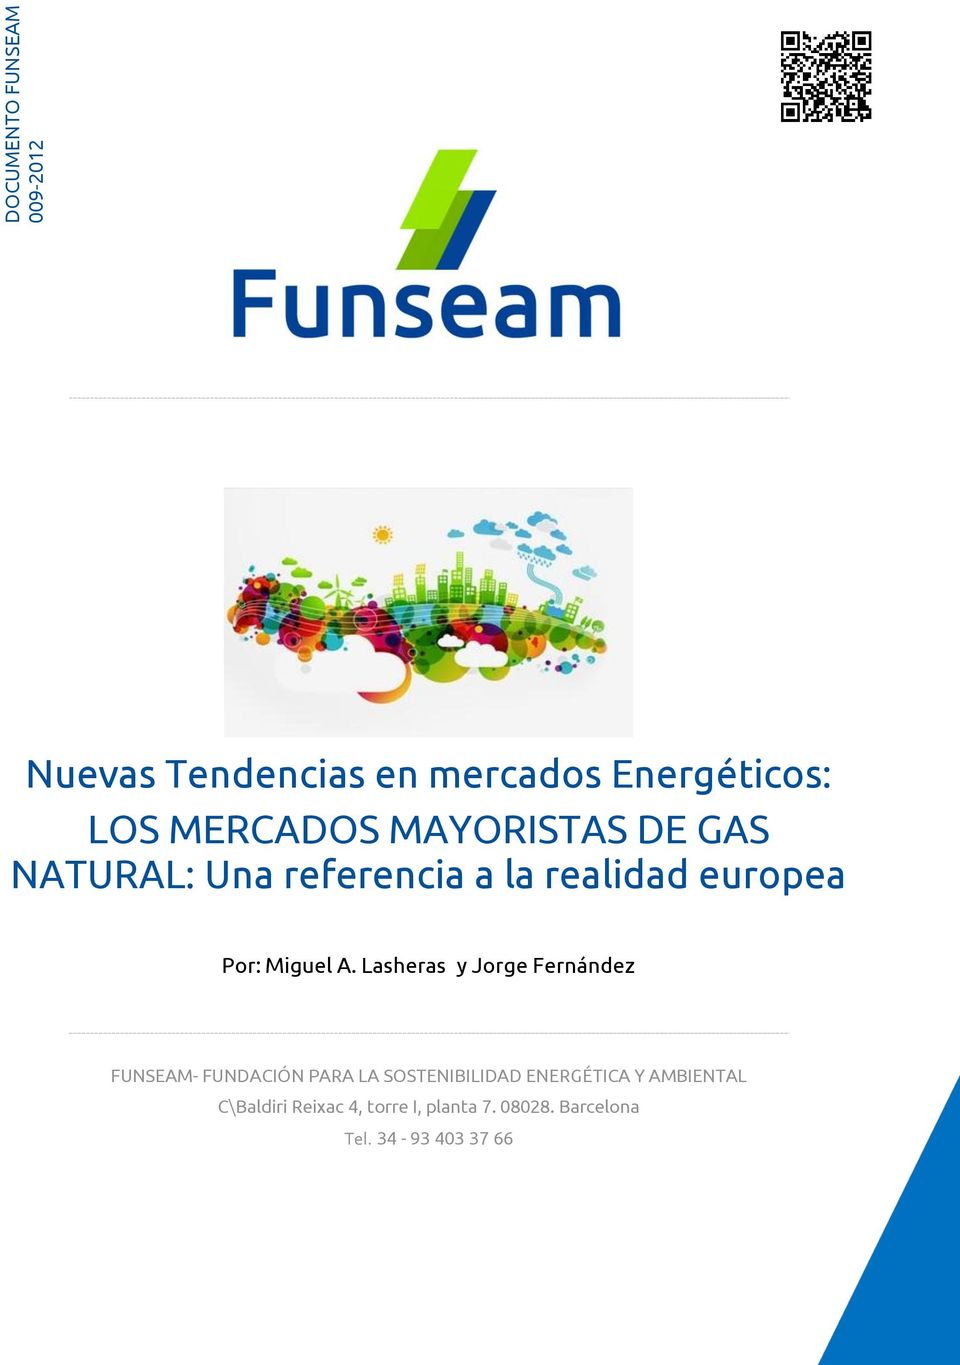 Lasheras y Jorge Fernández FUNSEAM- FUNDACIÓN PARA LA SOSTENIBILIDAD ENERGÉTICA Y